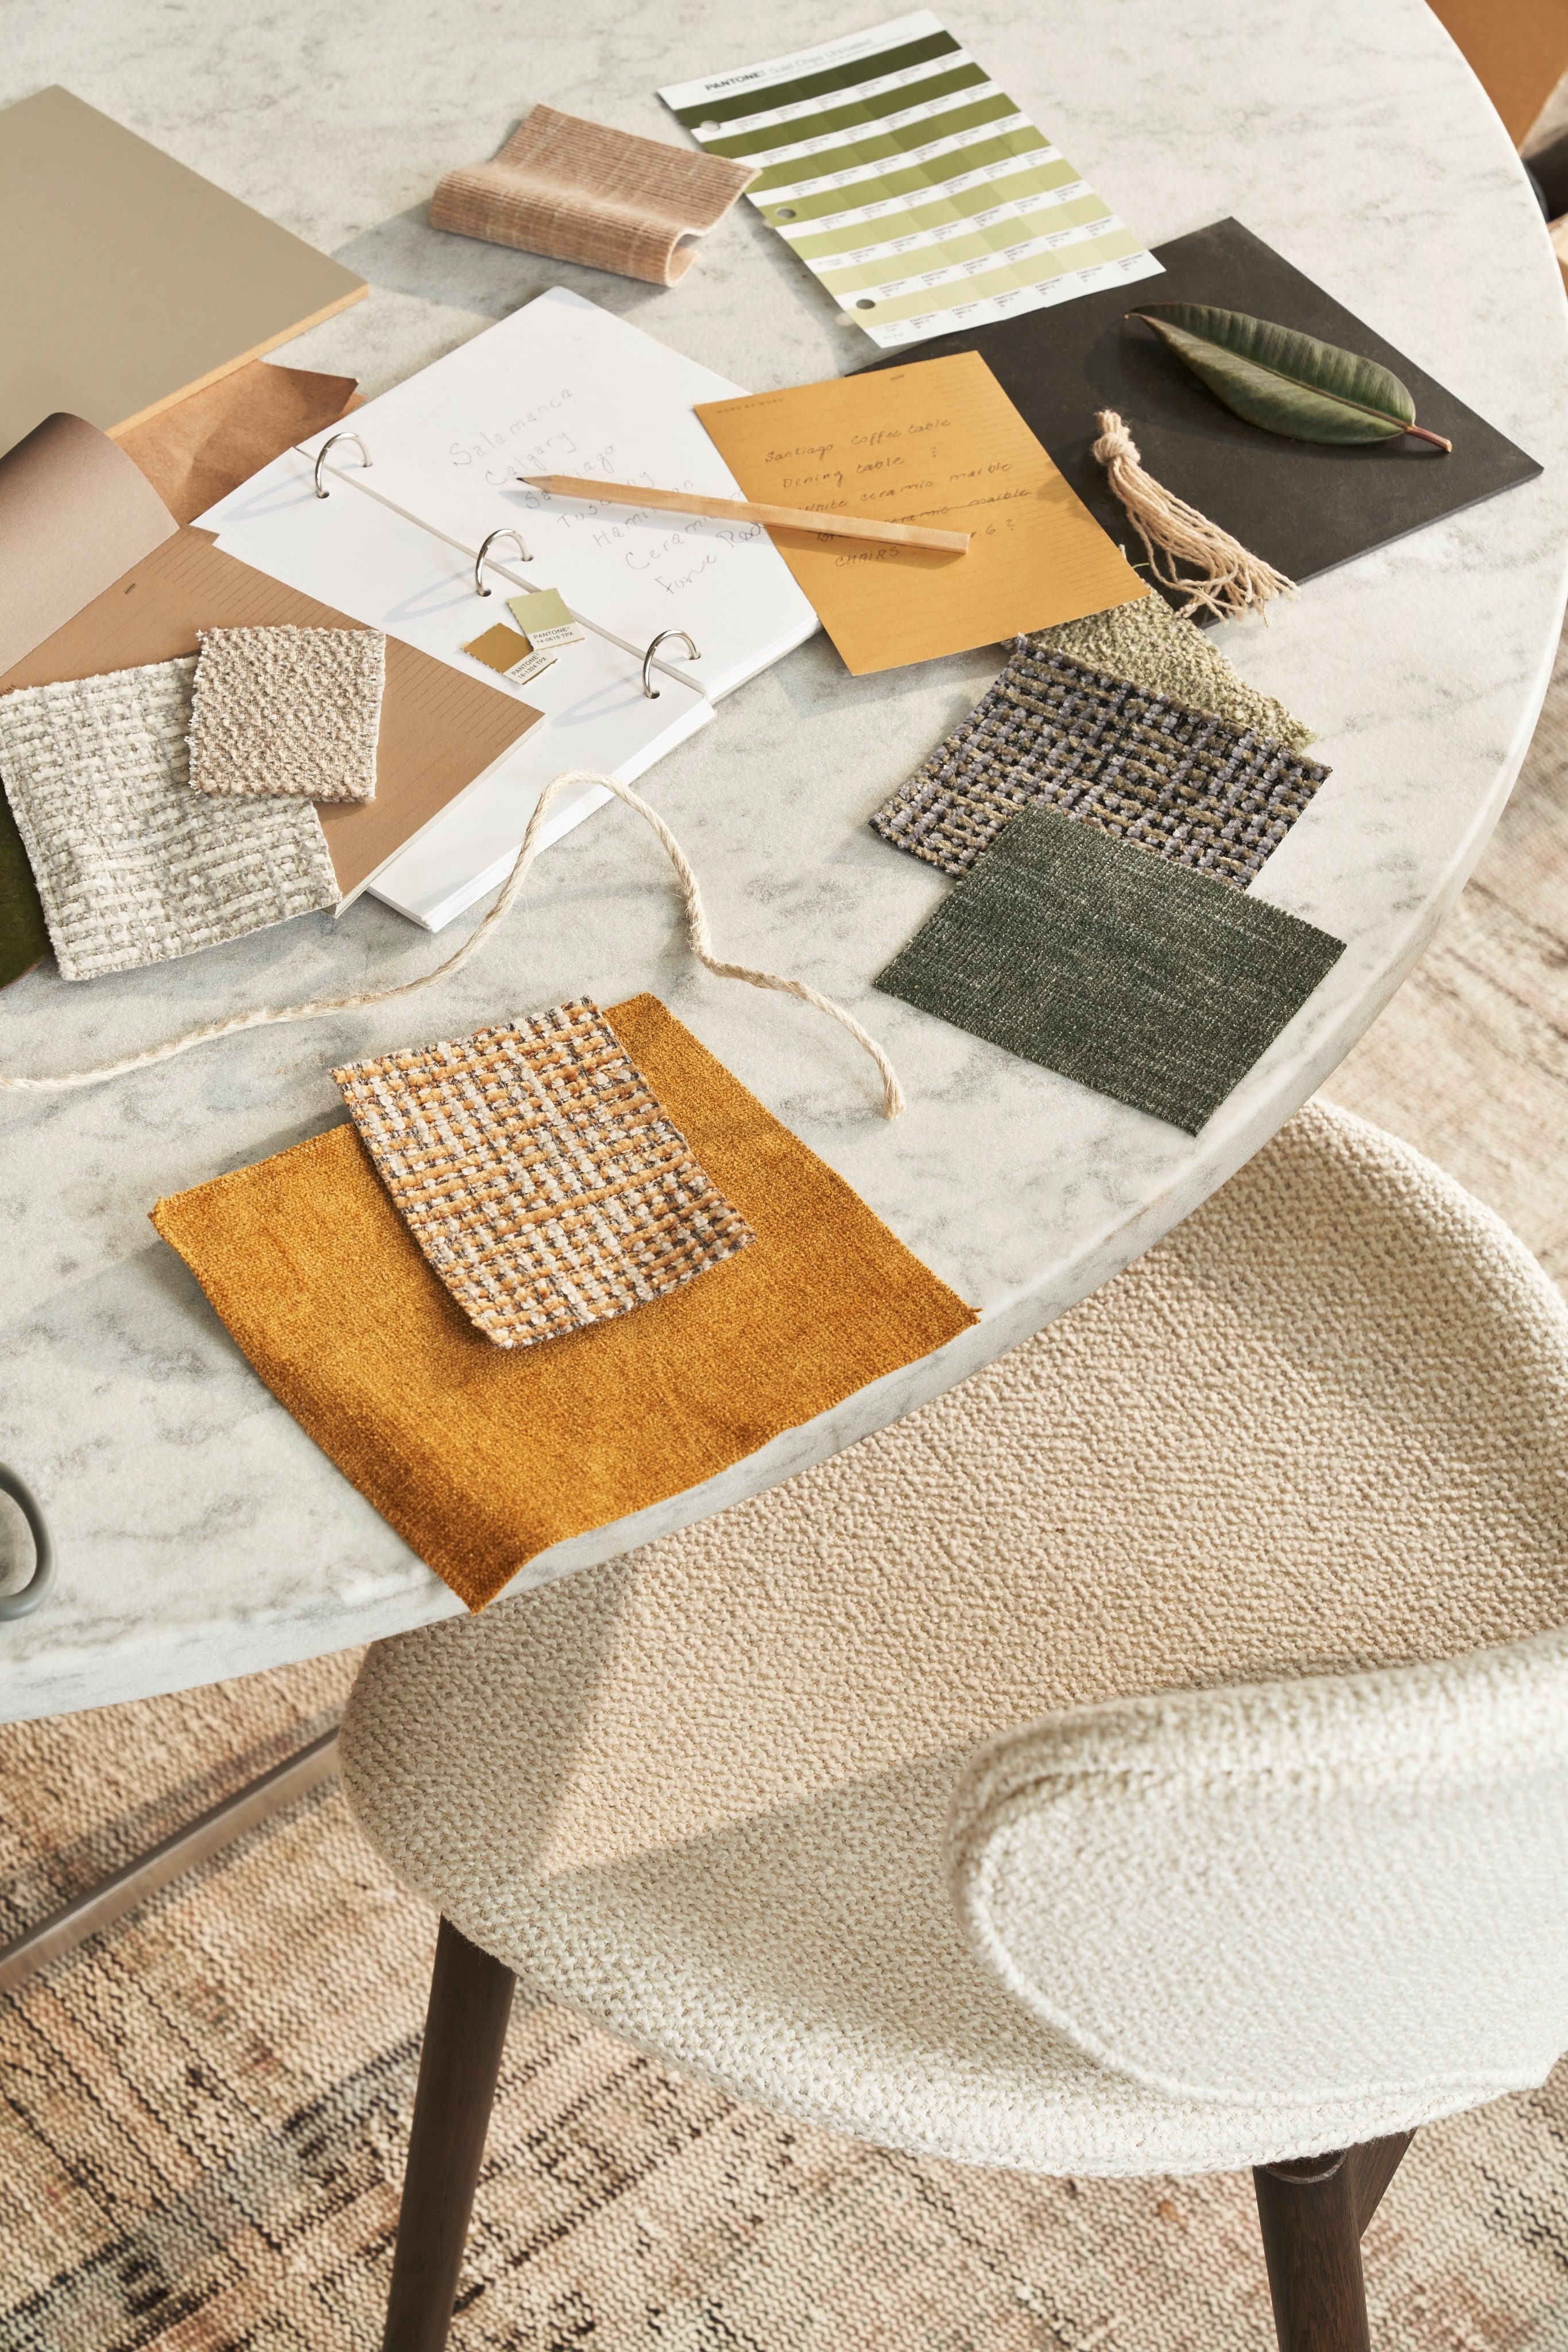 Mesa de mármore com amostras de tecido, notas e lápis em tons naturais.